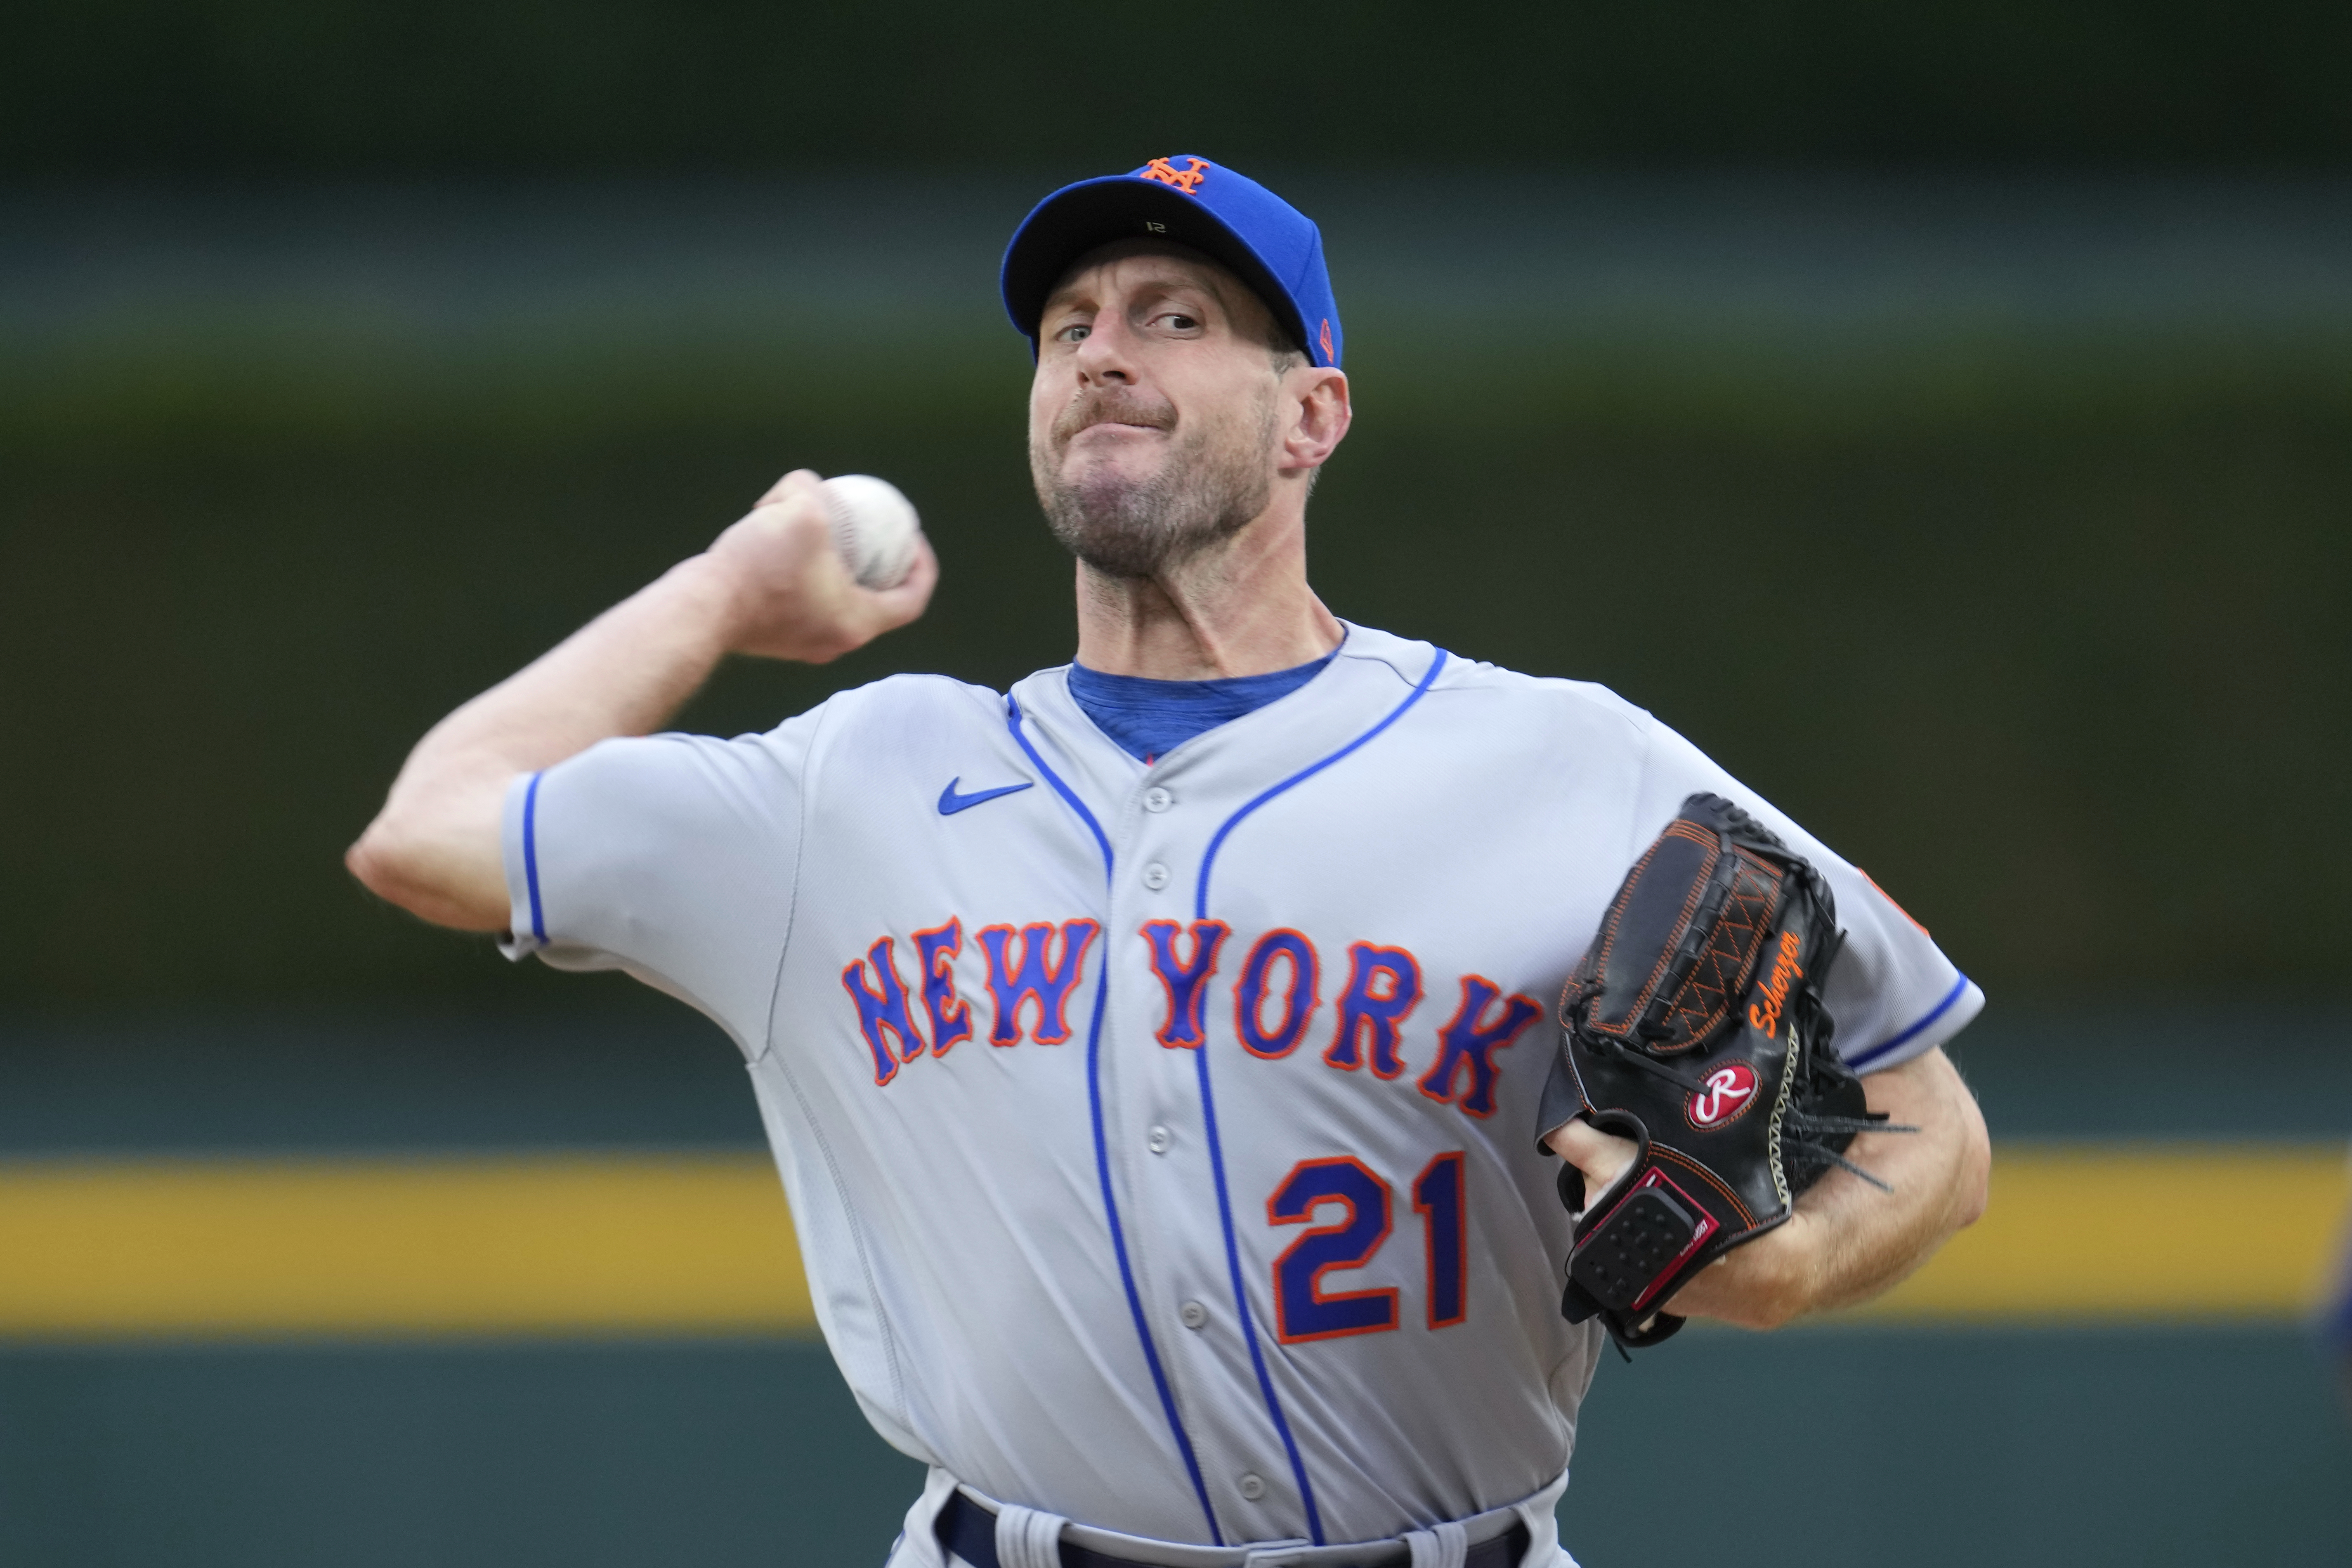 Mets fans shower Rangers' Max Scherzer with boos in first return